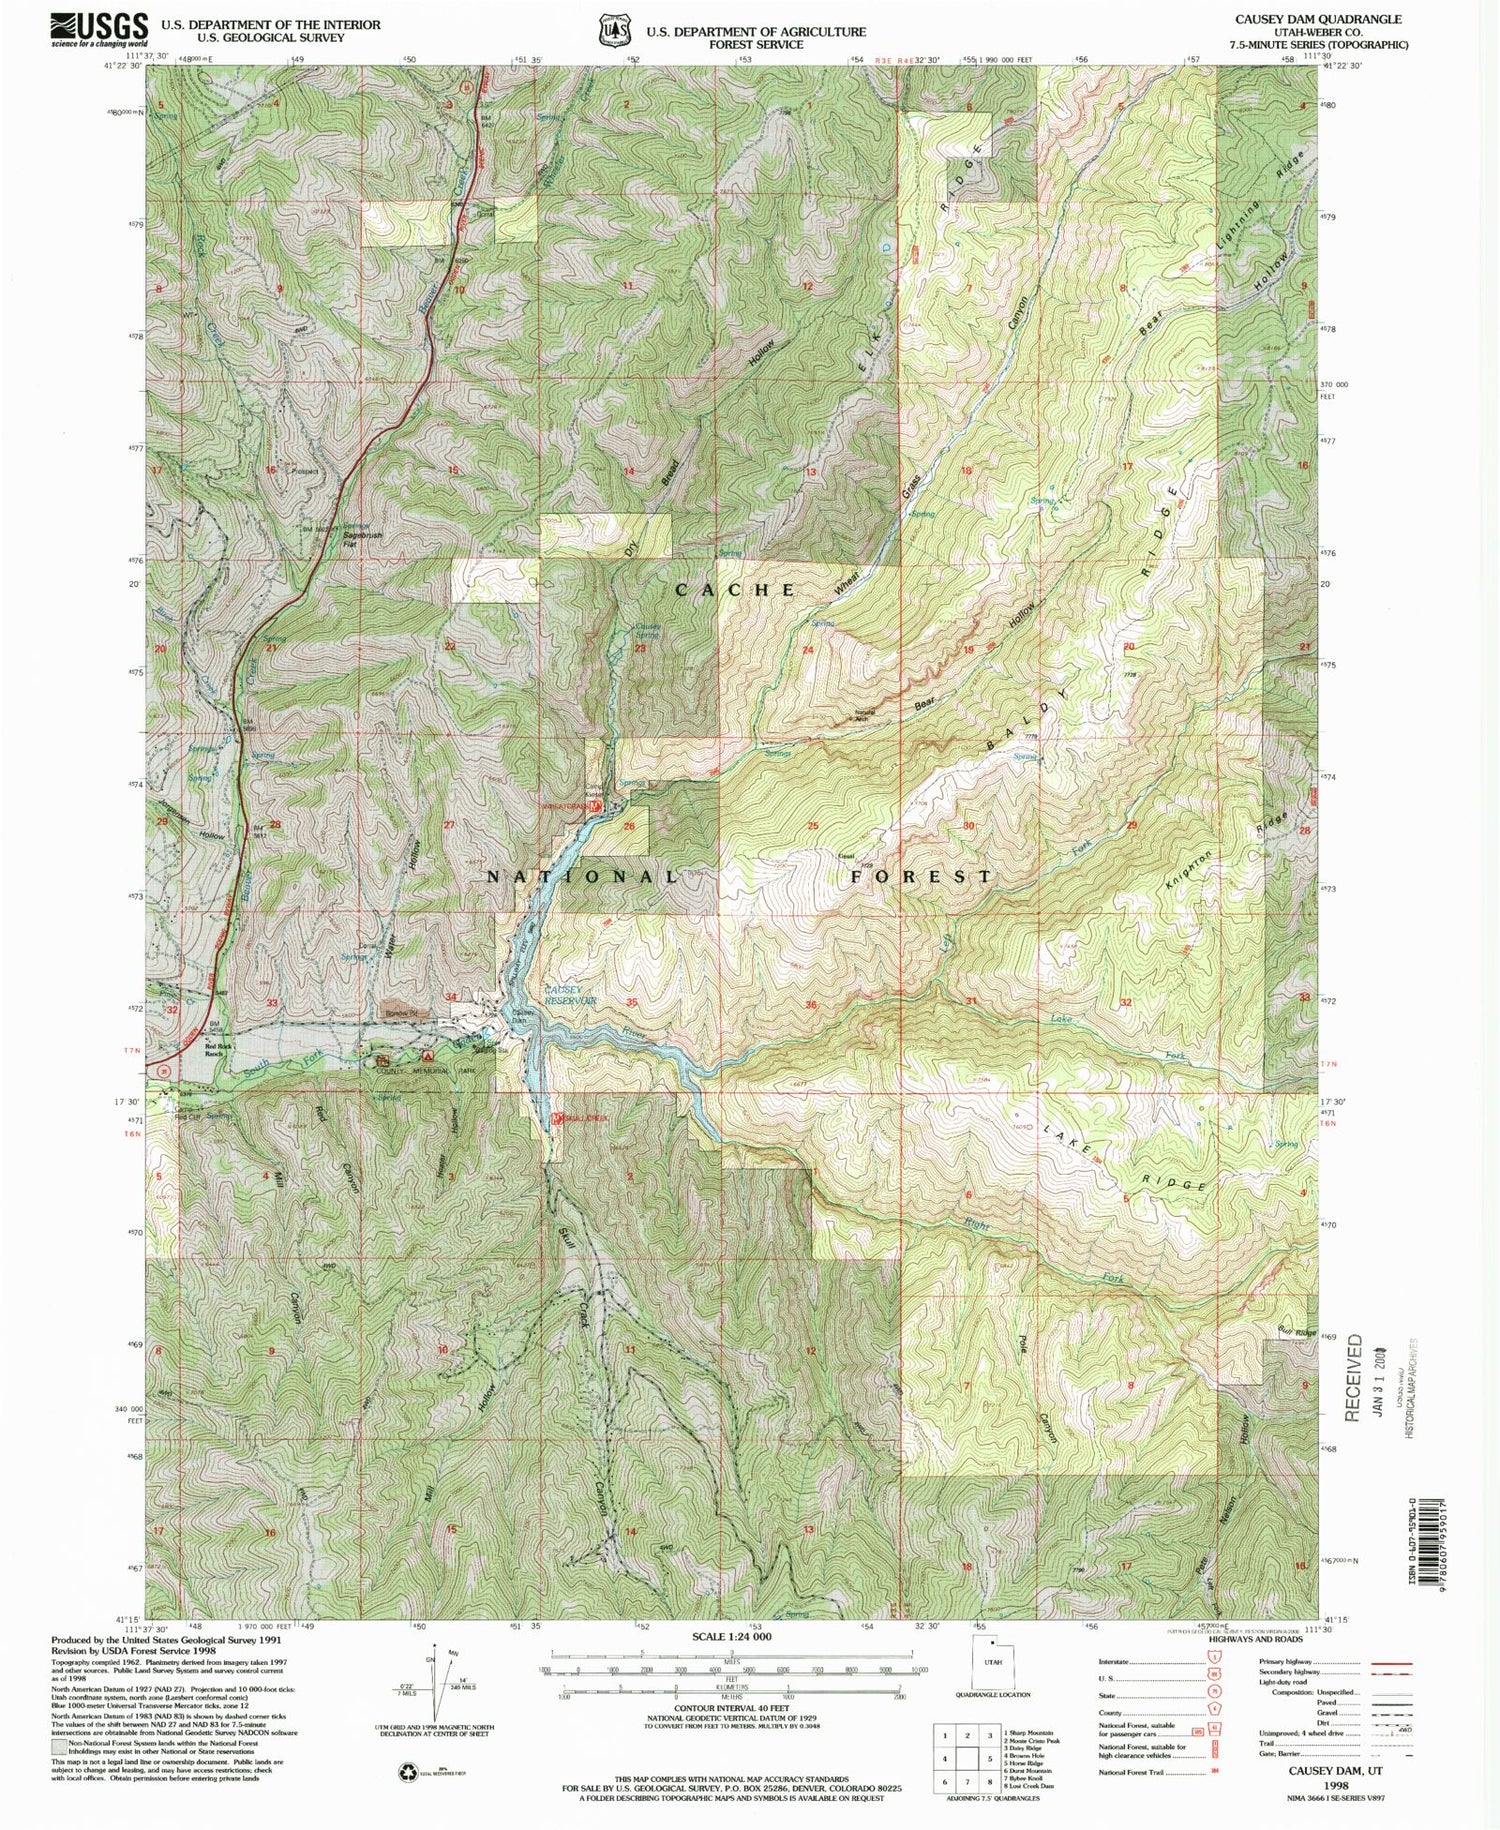 Classic USGS Causey Dam Utah 7.5'x7.5' Topo Map Image